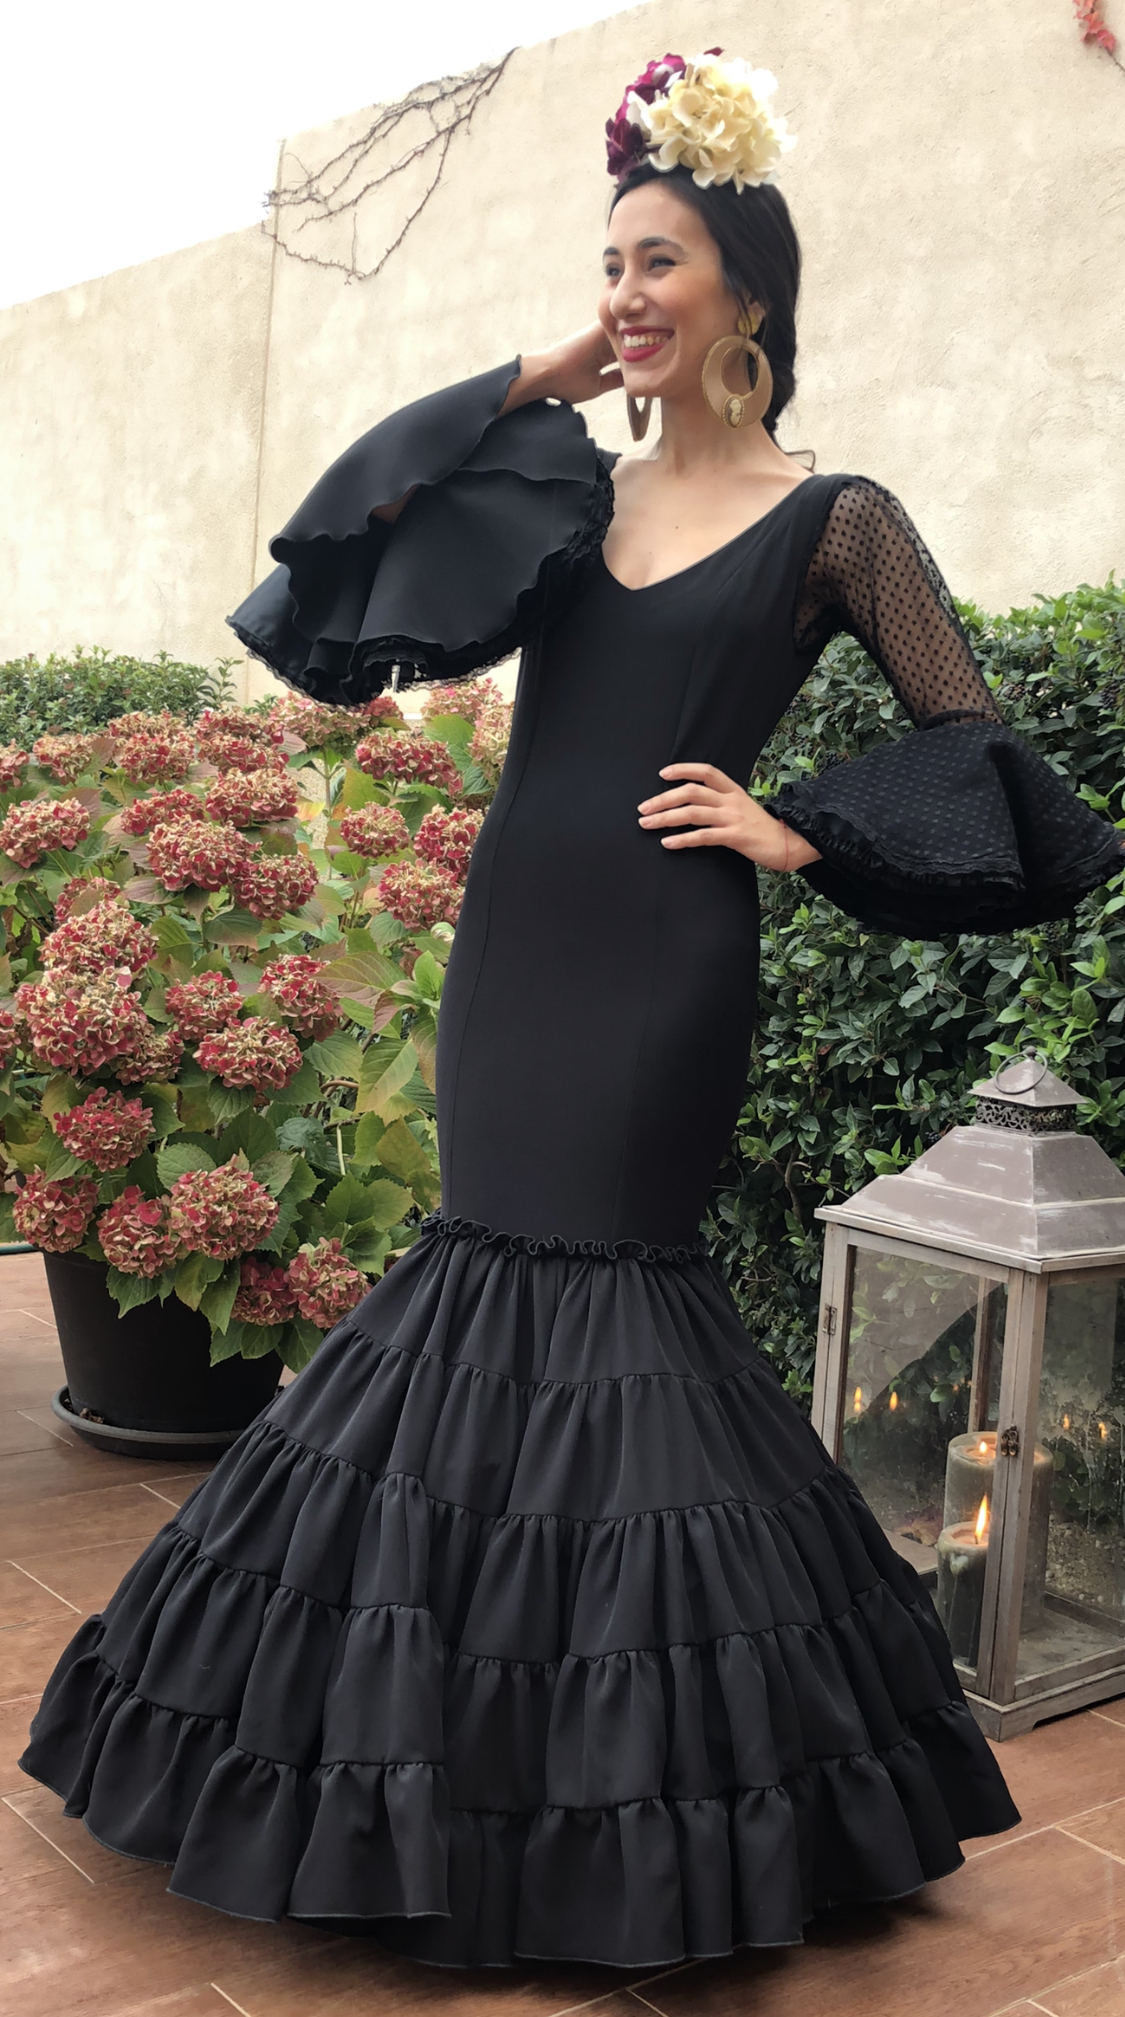 Vestido lycra Negro y mangas de encaje transparente. – Miky Ferrera